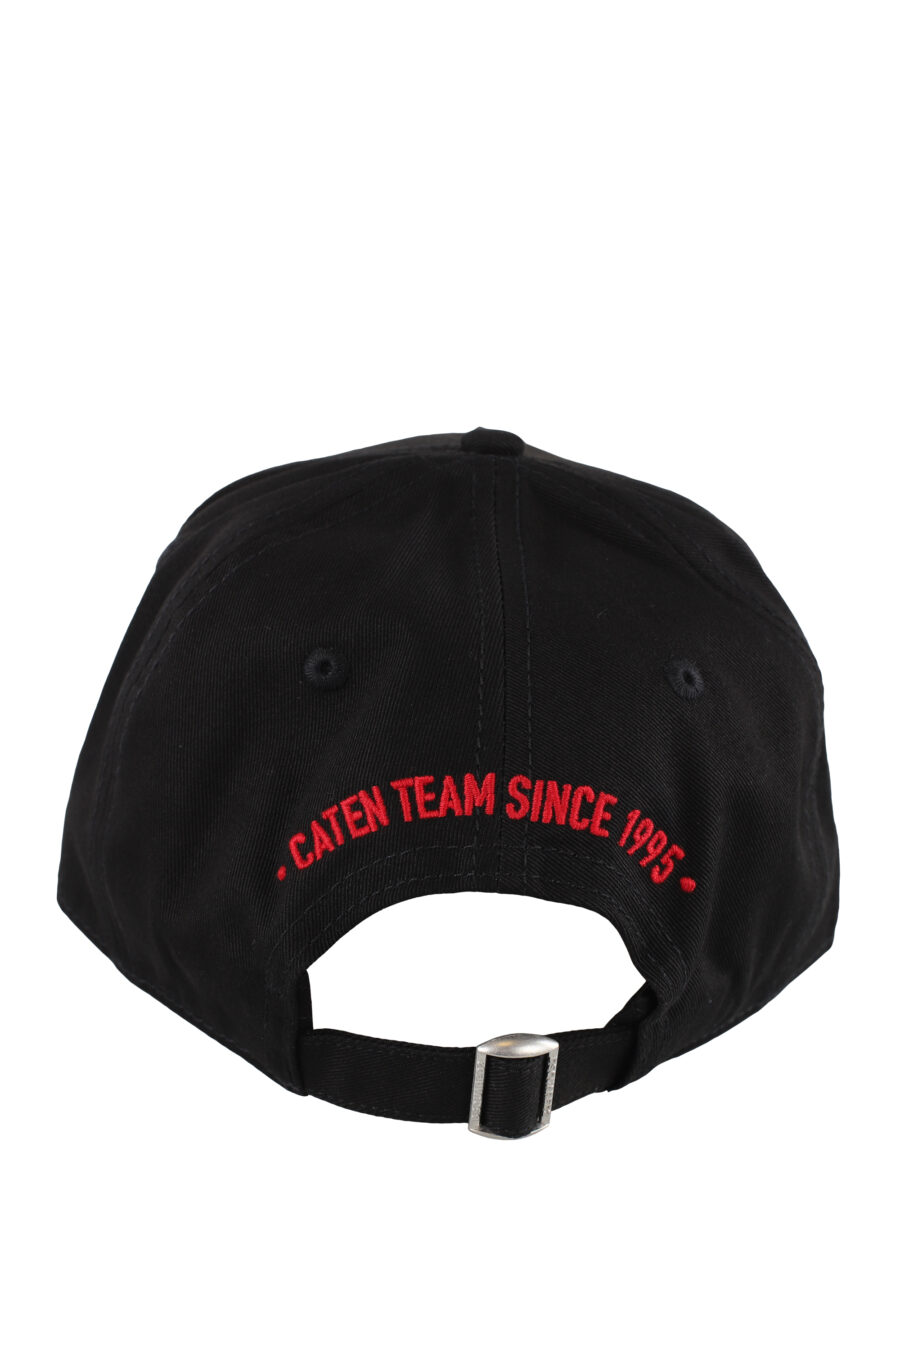 Gorra negra con parche y detalle rojo - IMG 5171